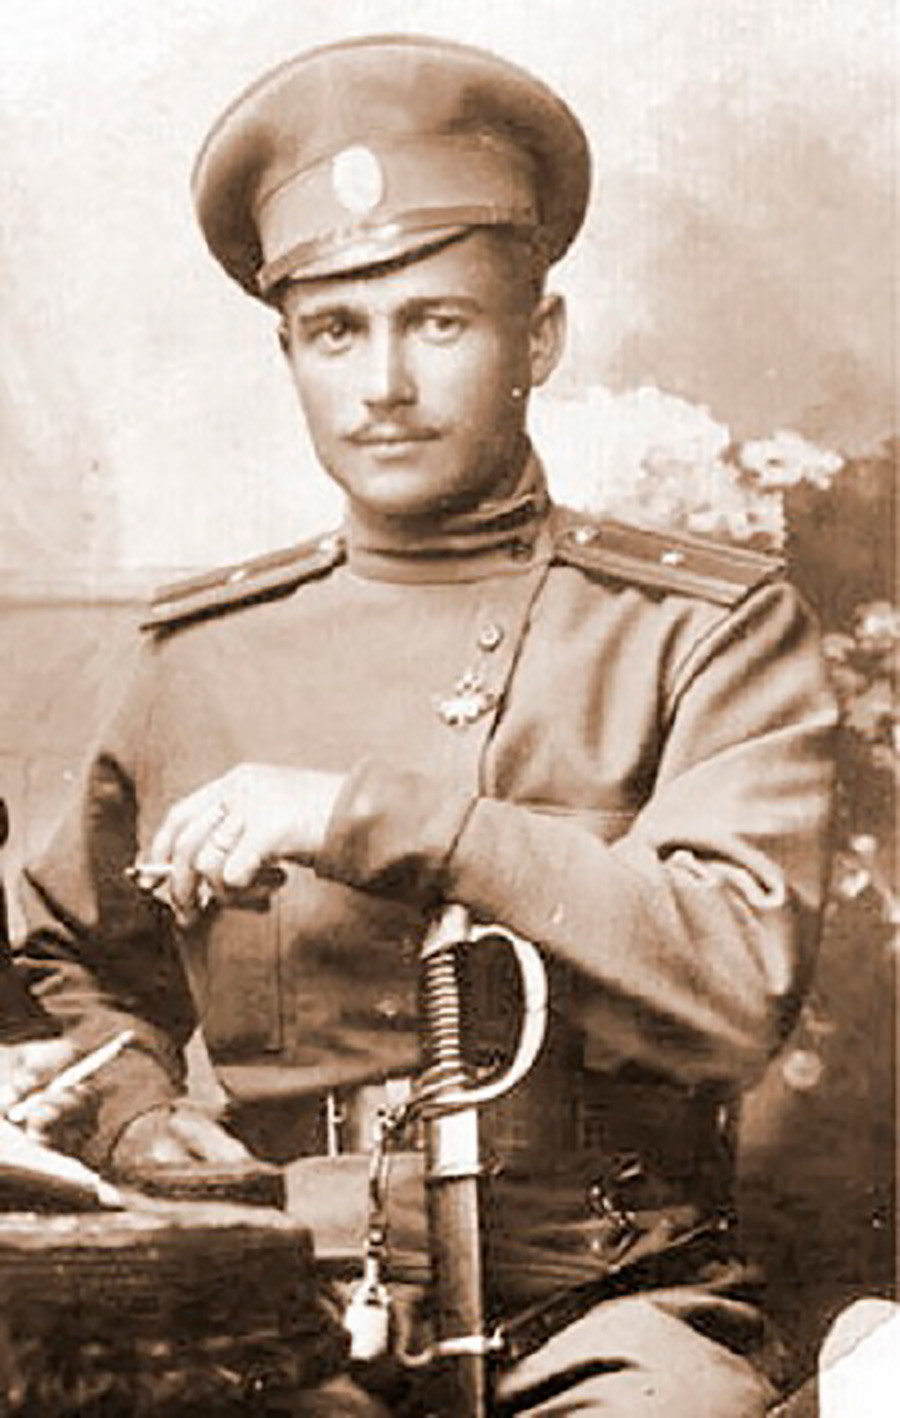 Vladimir Kotlinsky